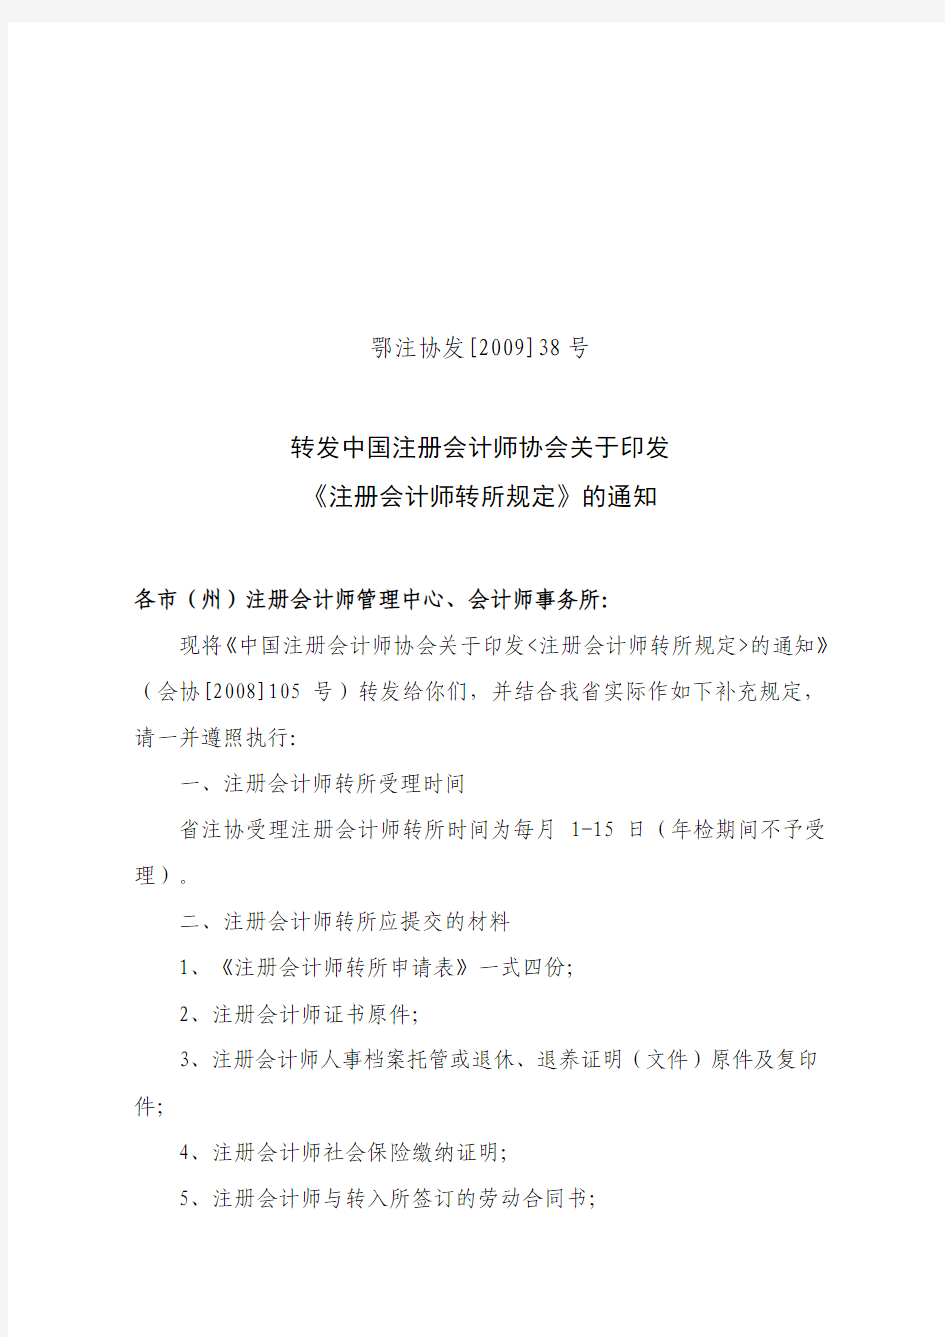 转发中国注册会计师协会关于印发《注册会计师转所规定》的通知